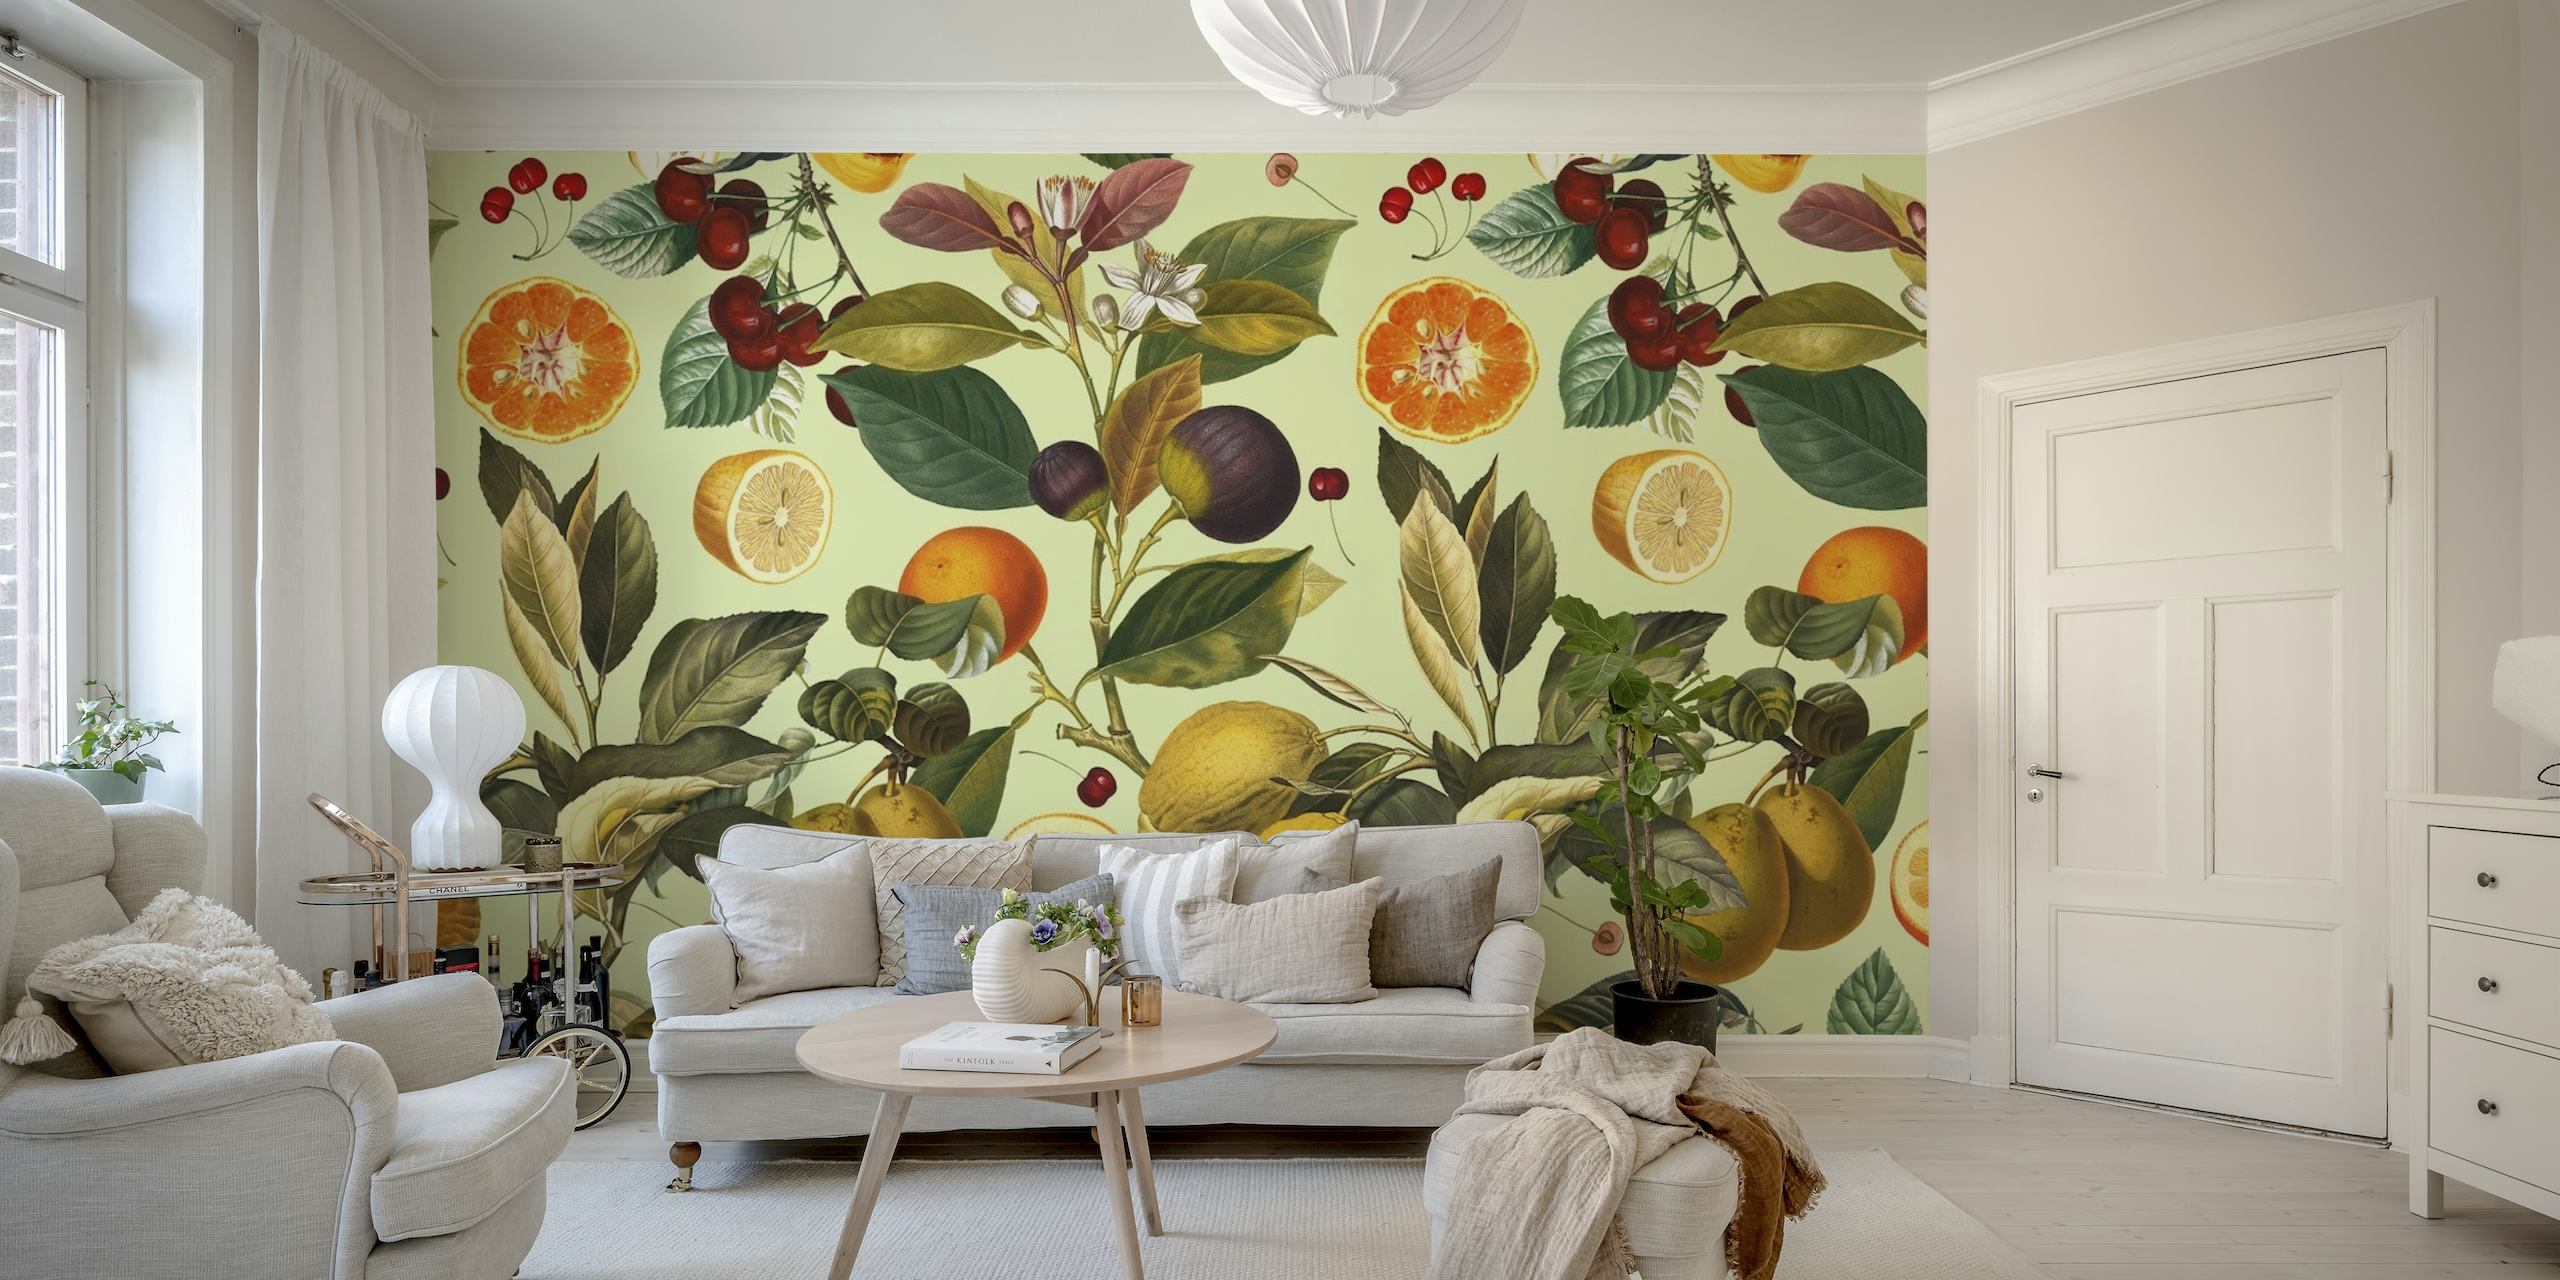 Fotomural vinílico de parede com padrão botânico e frutas vintage com frutas cítricas, frutas vermelhas e ameixas.